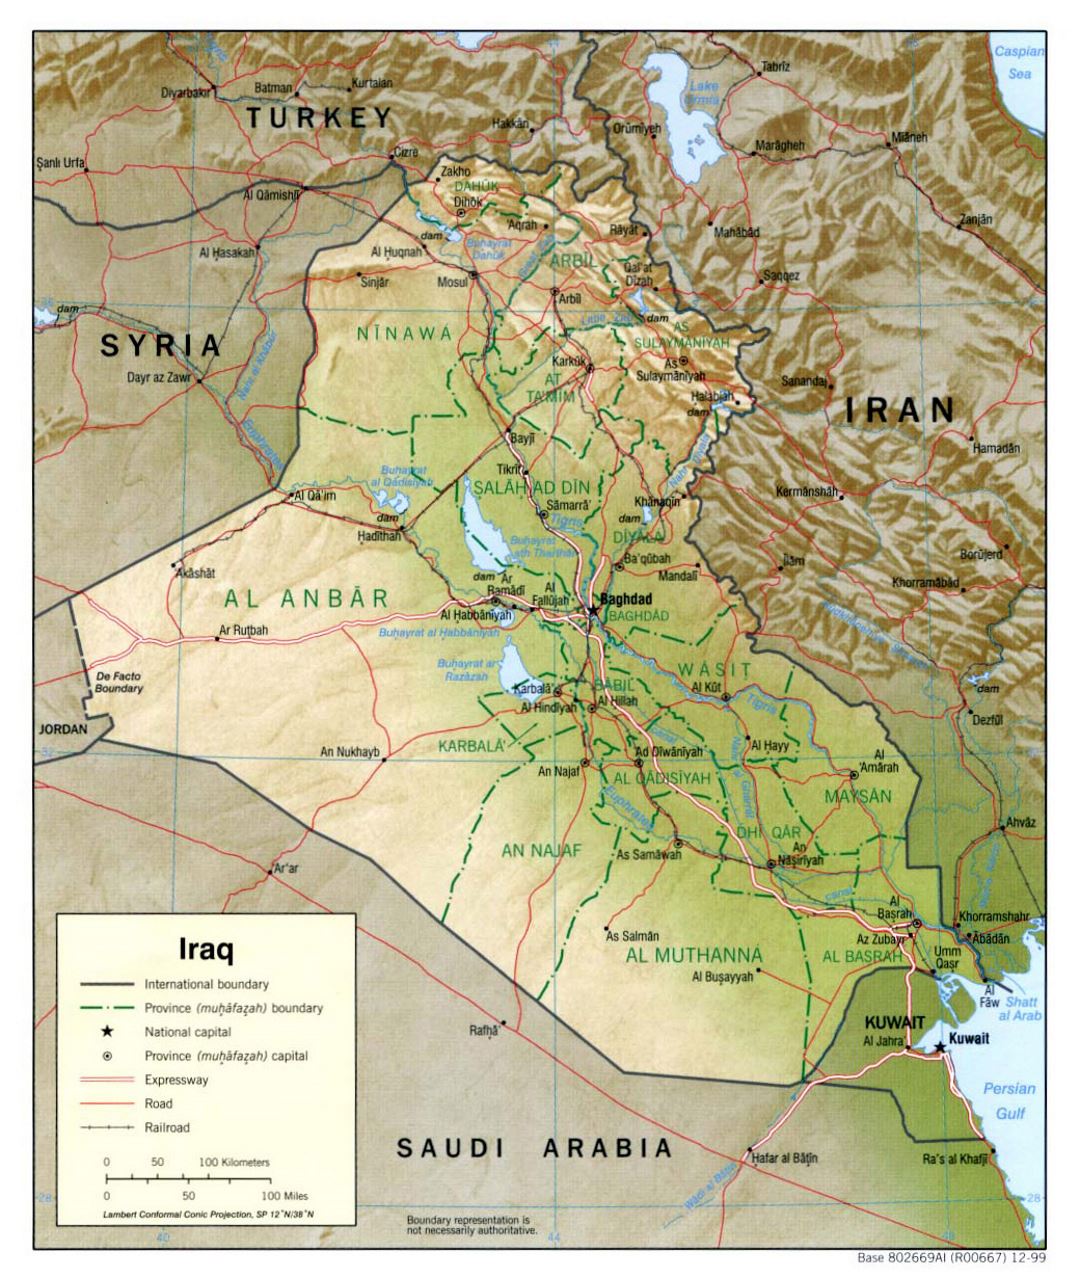 Grande mapa político y administrativo de Iraq con relieve, carreteras, ferrocarriles y principales ciudades - 1999